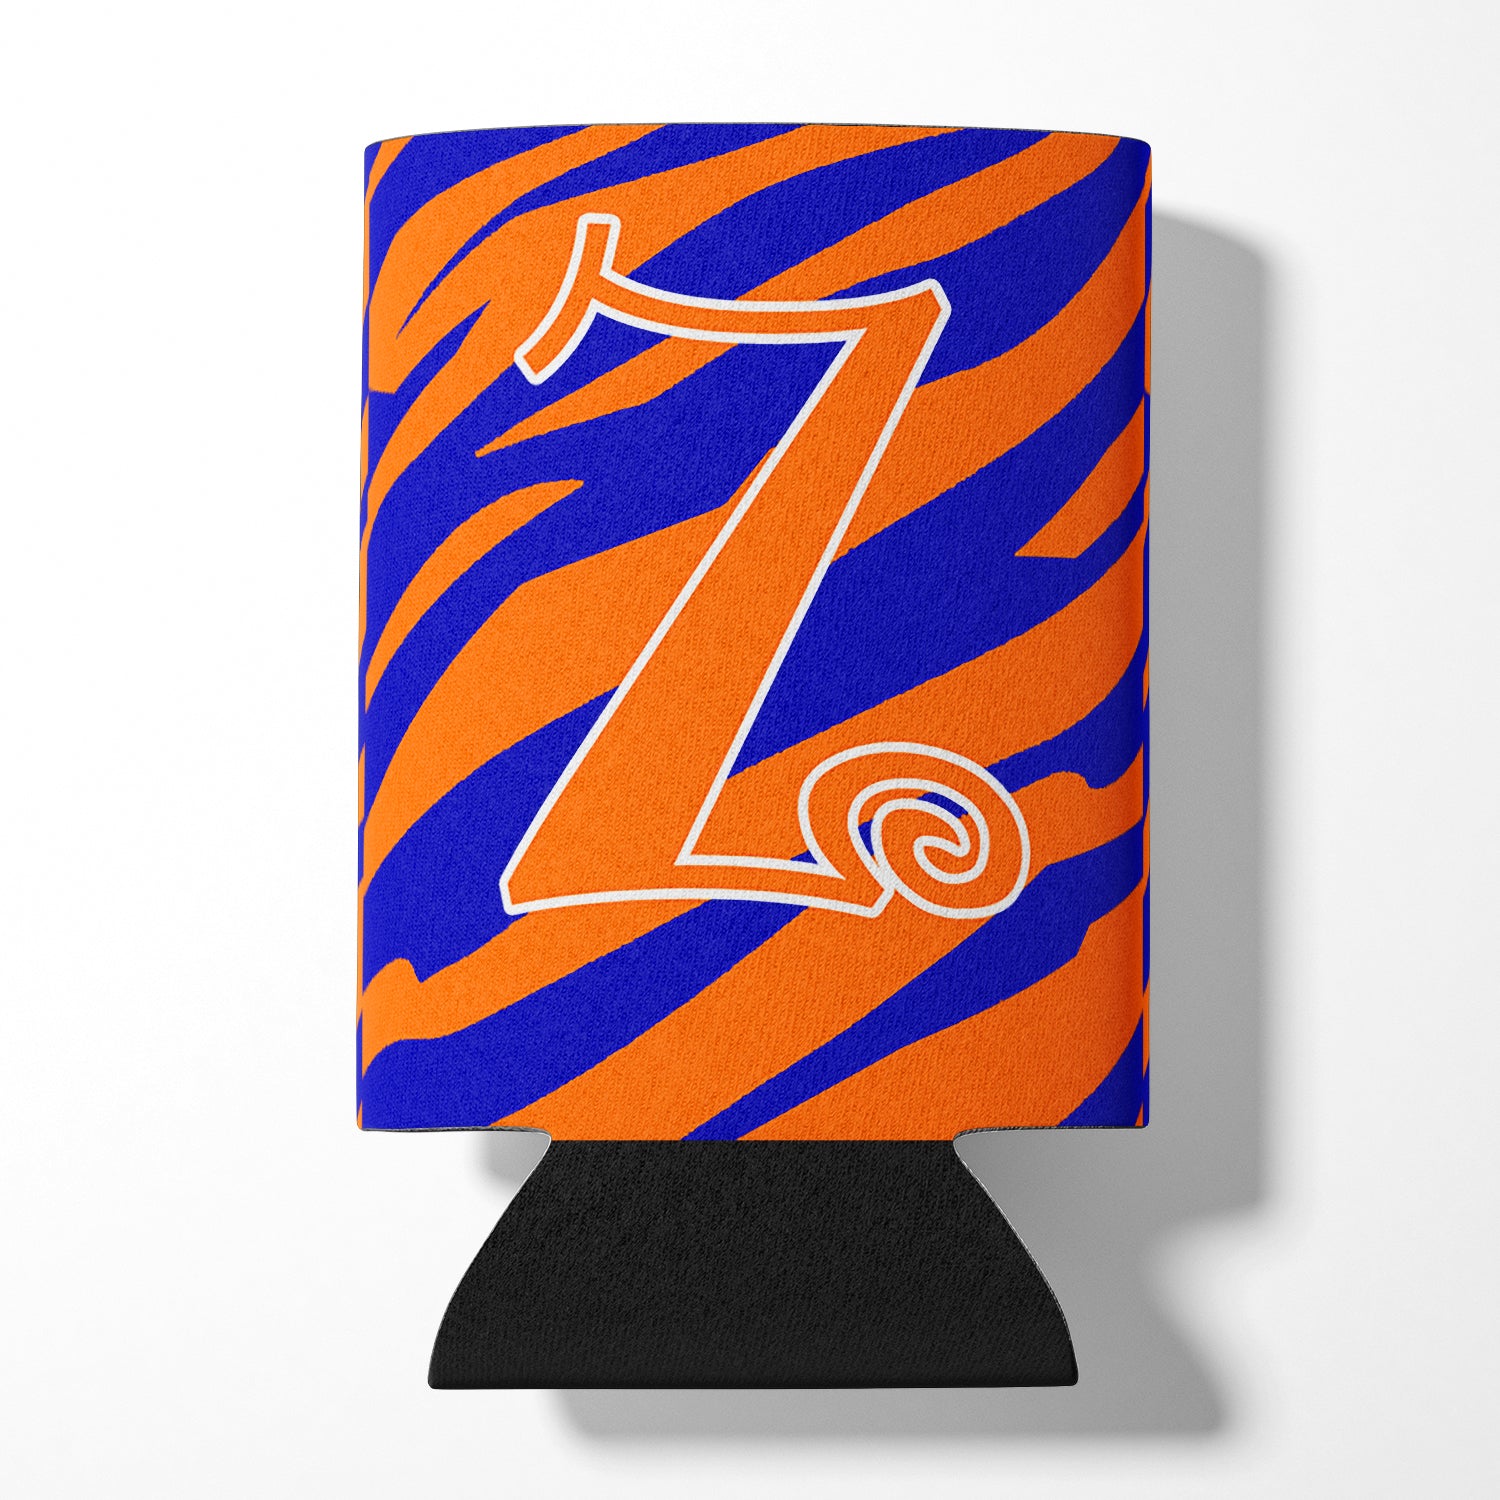 Letter Z Initial Monogram - Tiger Stripe Blue and Orange Can Beverage Insulator Hugger.